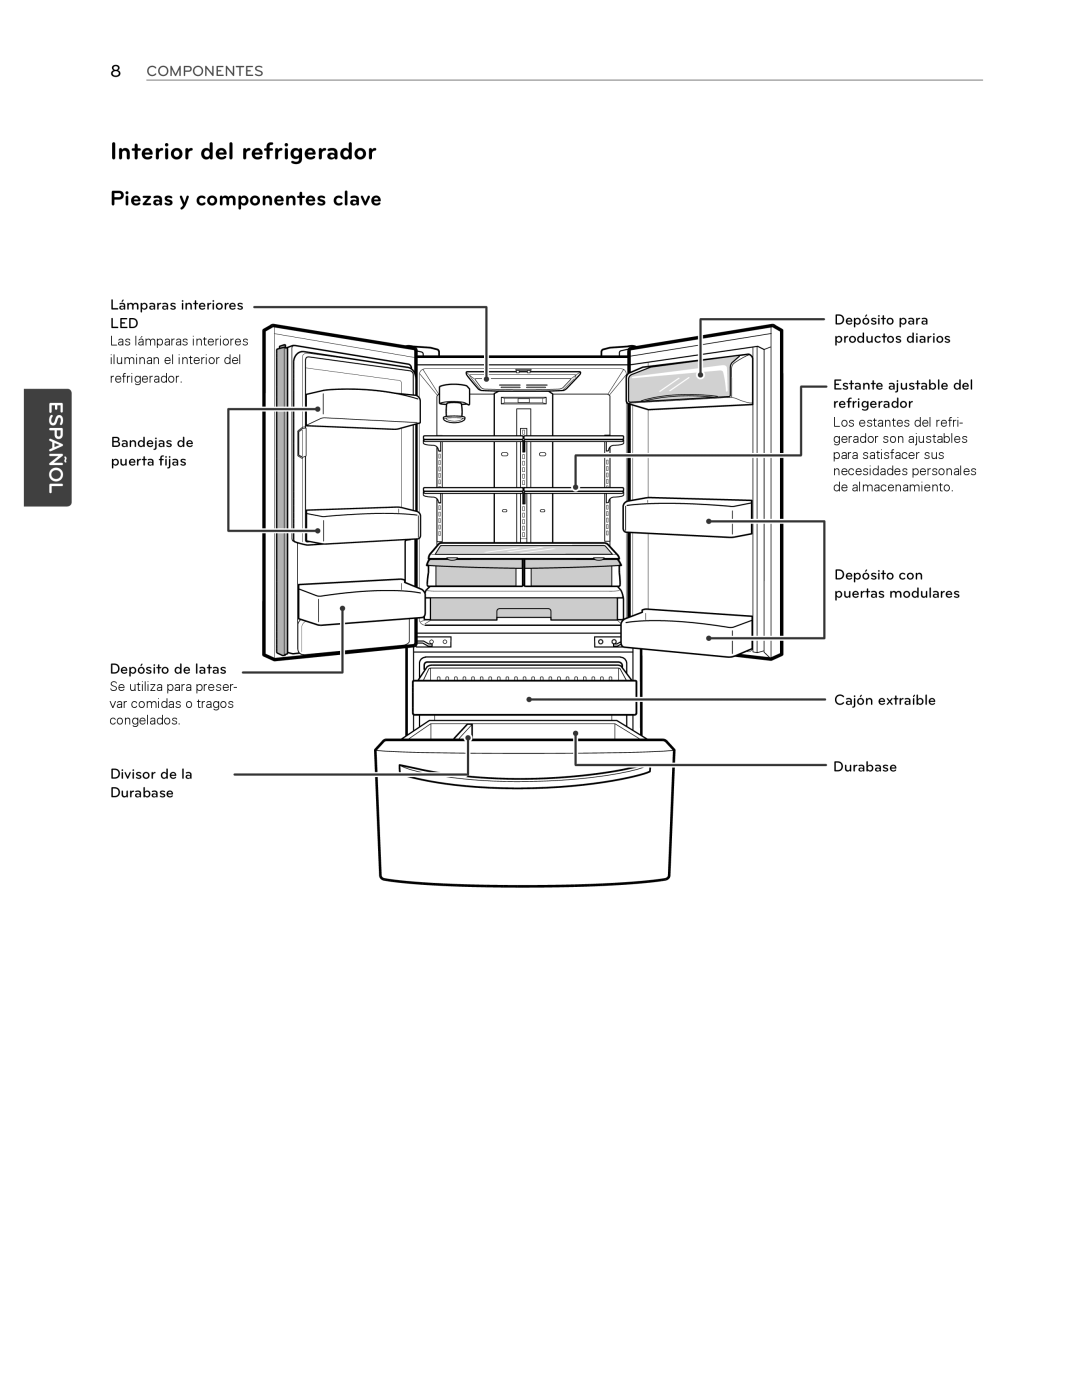 LG Electronics LFX25974SB Interior del refrigerador, Piezas y componentes clave, 8COMPONENTES, puerta fijas, Bandejas de 